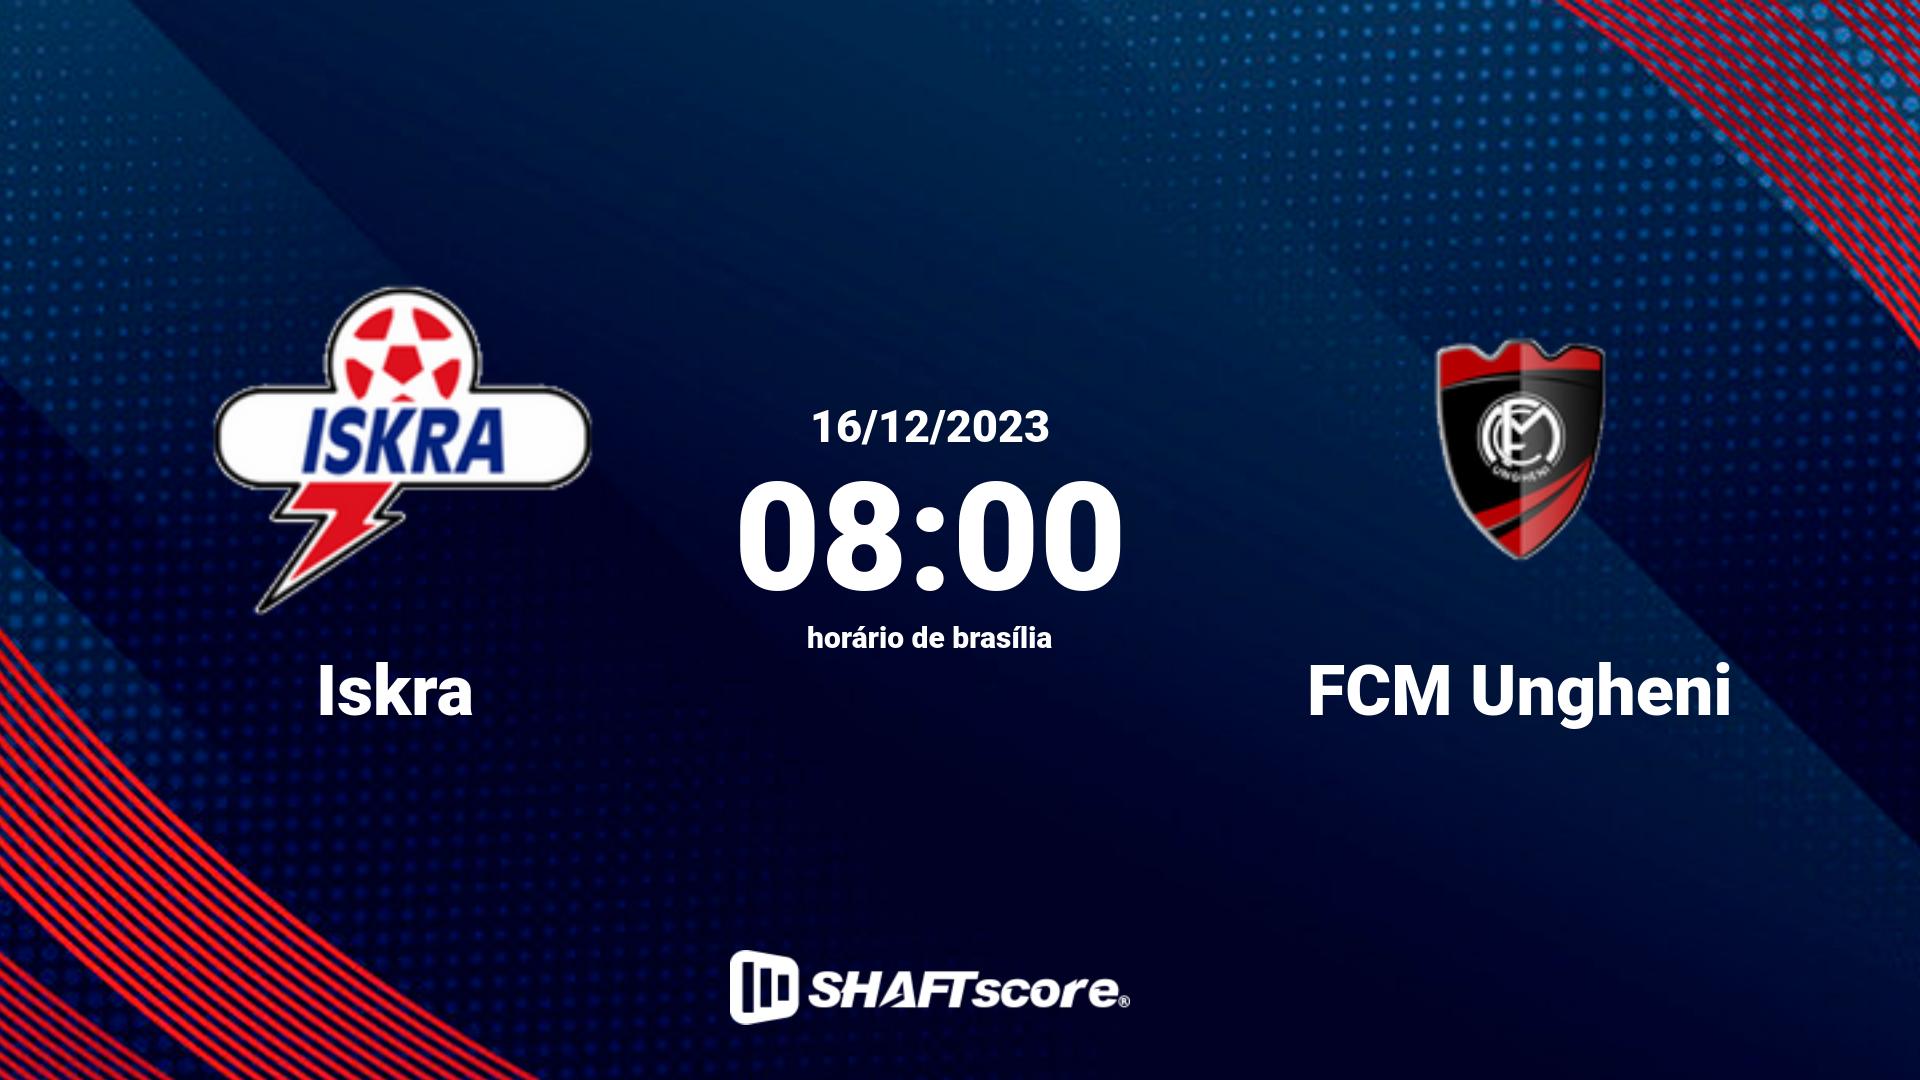 Estatísticas do jogo Iskra vs FCM Ungheni 16.12 08:00